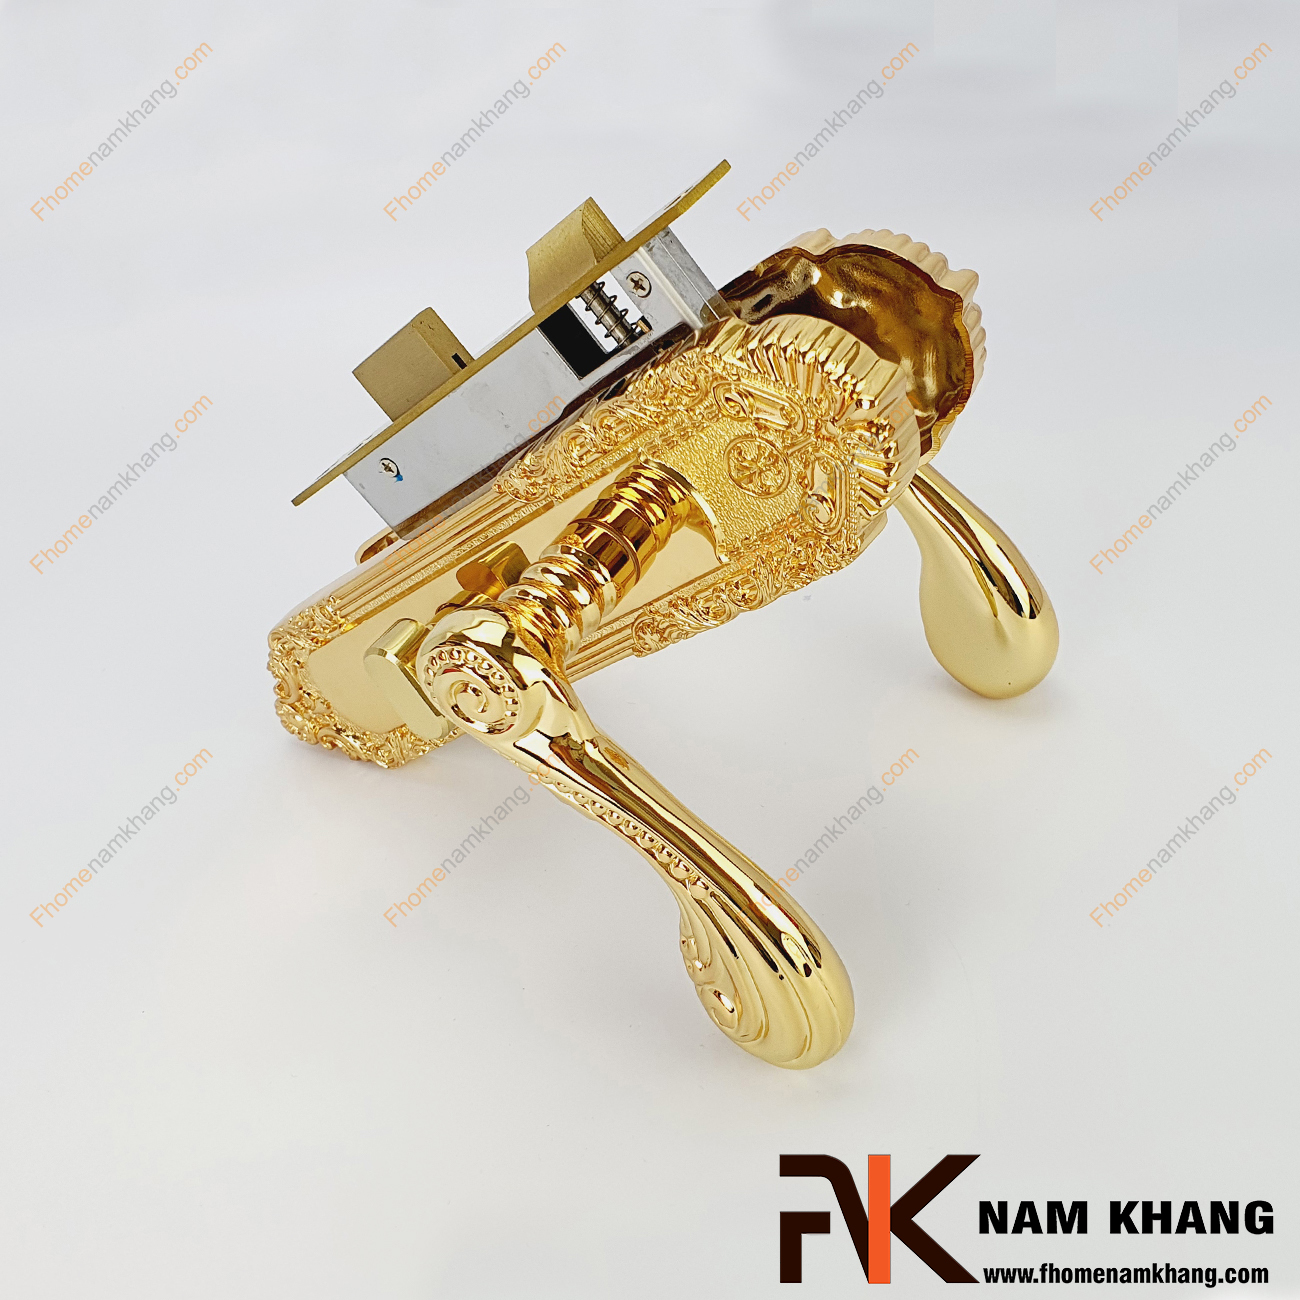 Khóa cửa thông phòng bằng đồng màu vàng NK185M-24K là một bộ khóa cửa nhập khẩu cao cấp chuyên dùng cho các dạng cánh cửa phòng, cửa ban công, cửa nhà vệ sinh,...